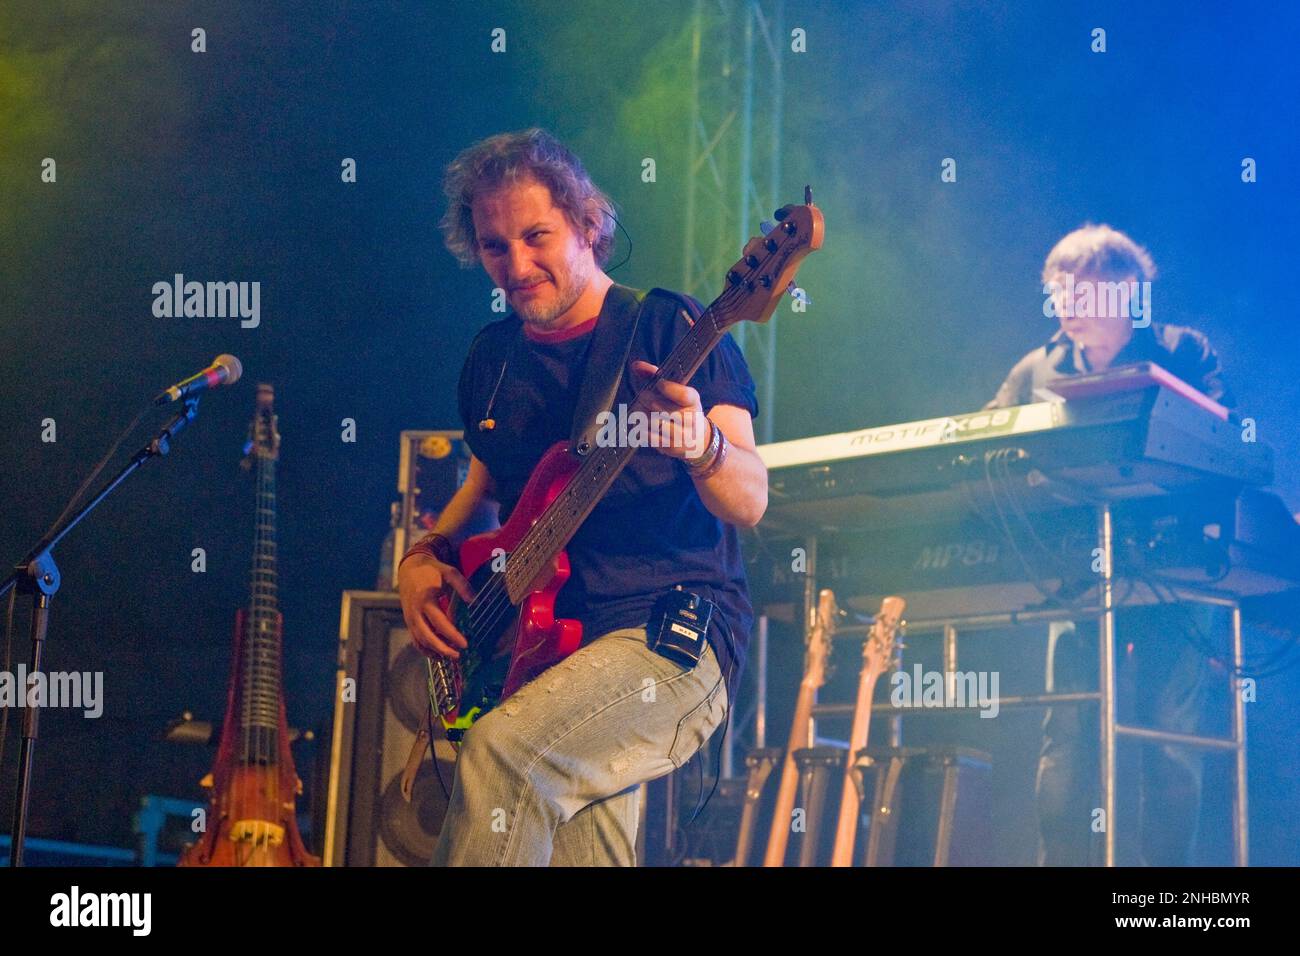 19.02.2011, Novellara, XIX Tribute to Augusto.  The guitarist Massimo Vecchi Stock Photo